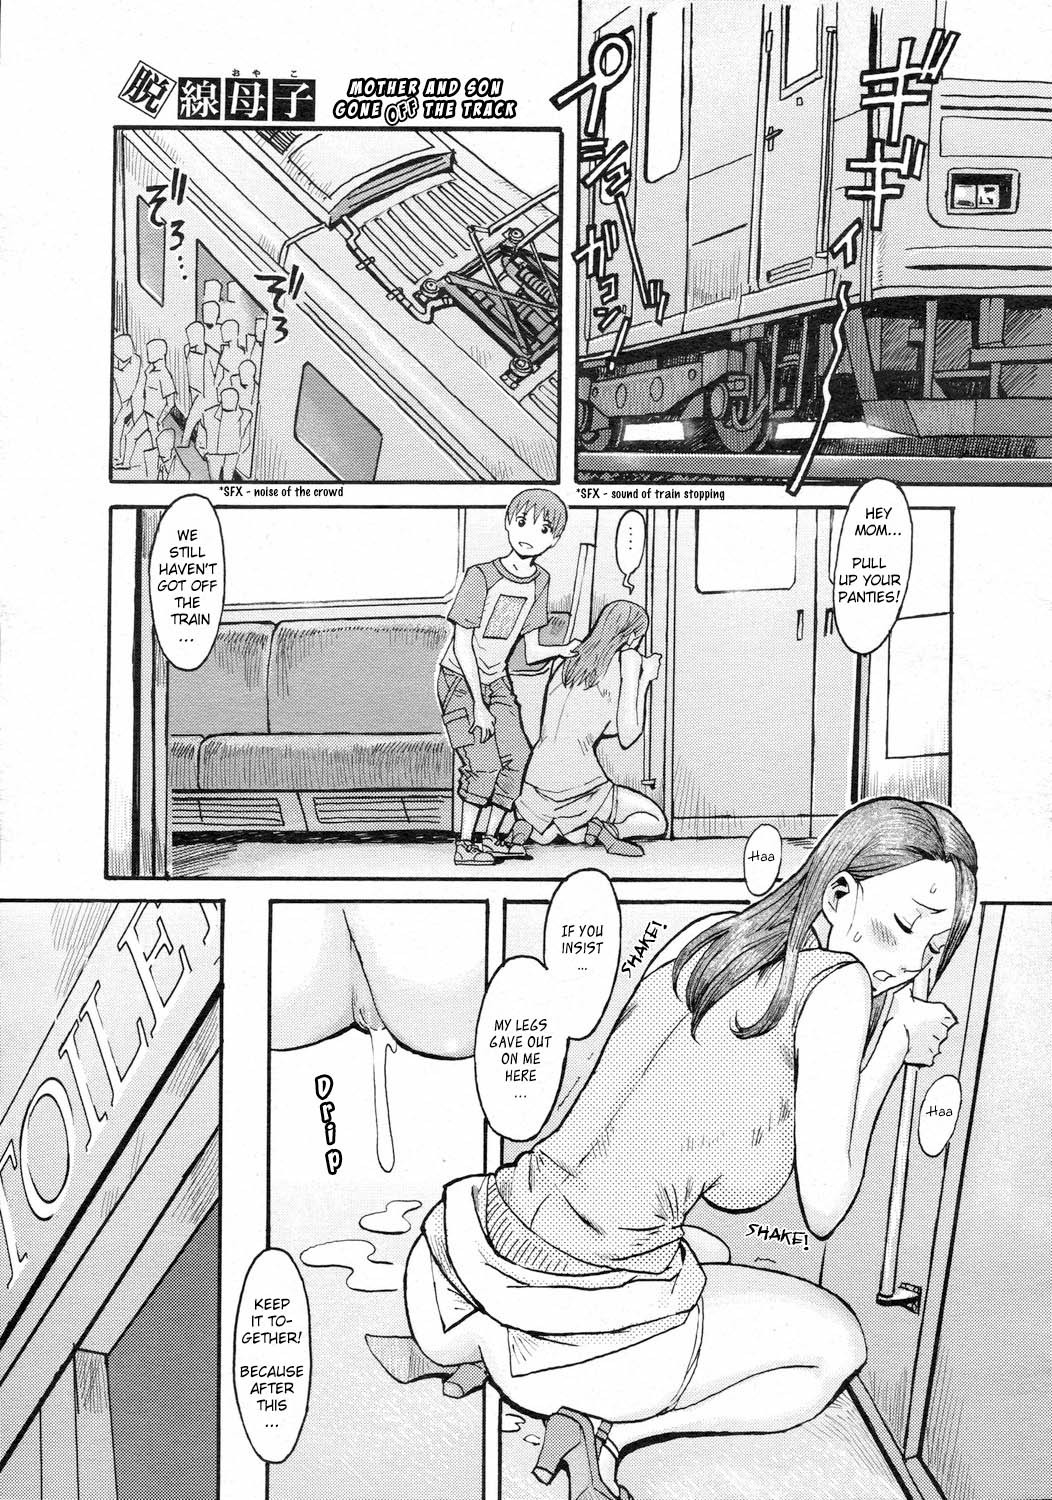 Порно комикс в поезде фото 16